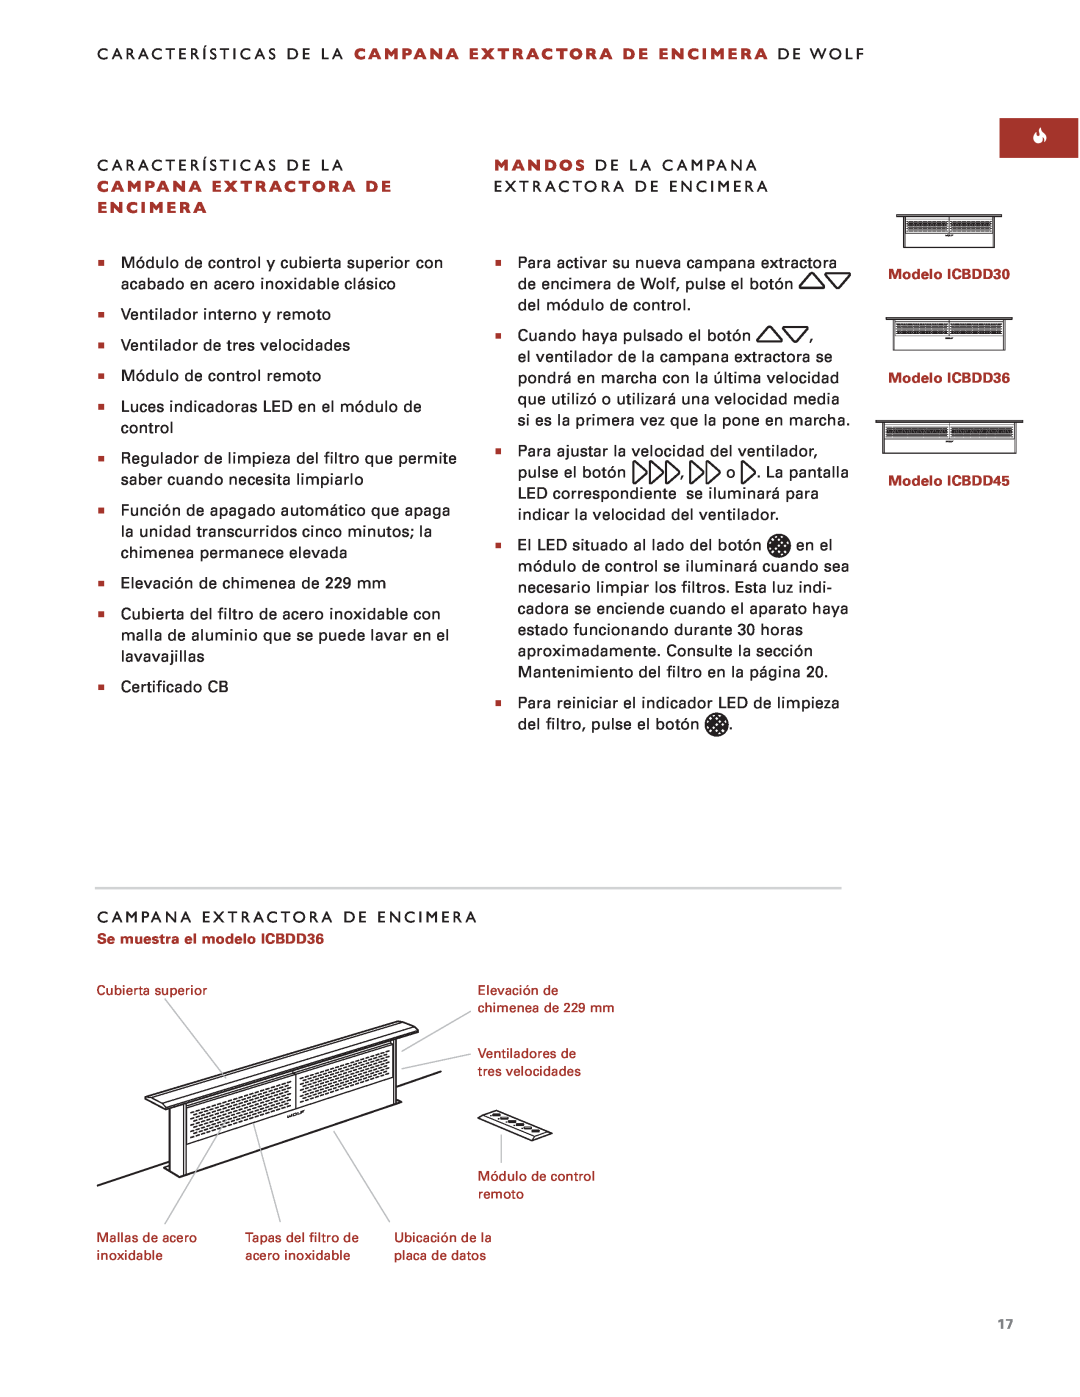 Sub-Zero Downdraft Ventilation manual Características De La Campana Extractora De Encimera De Wolf 